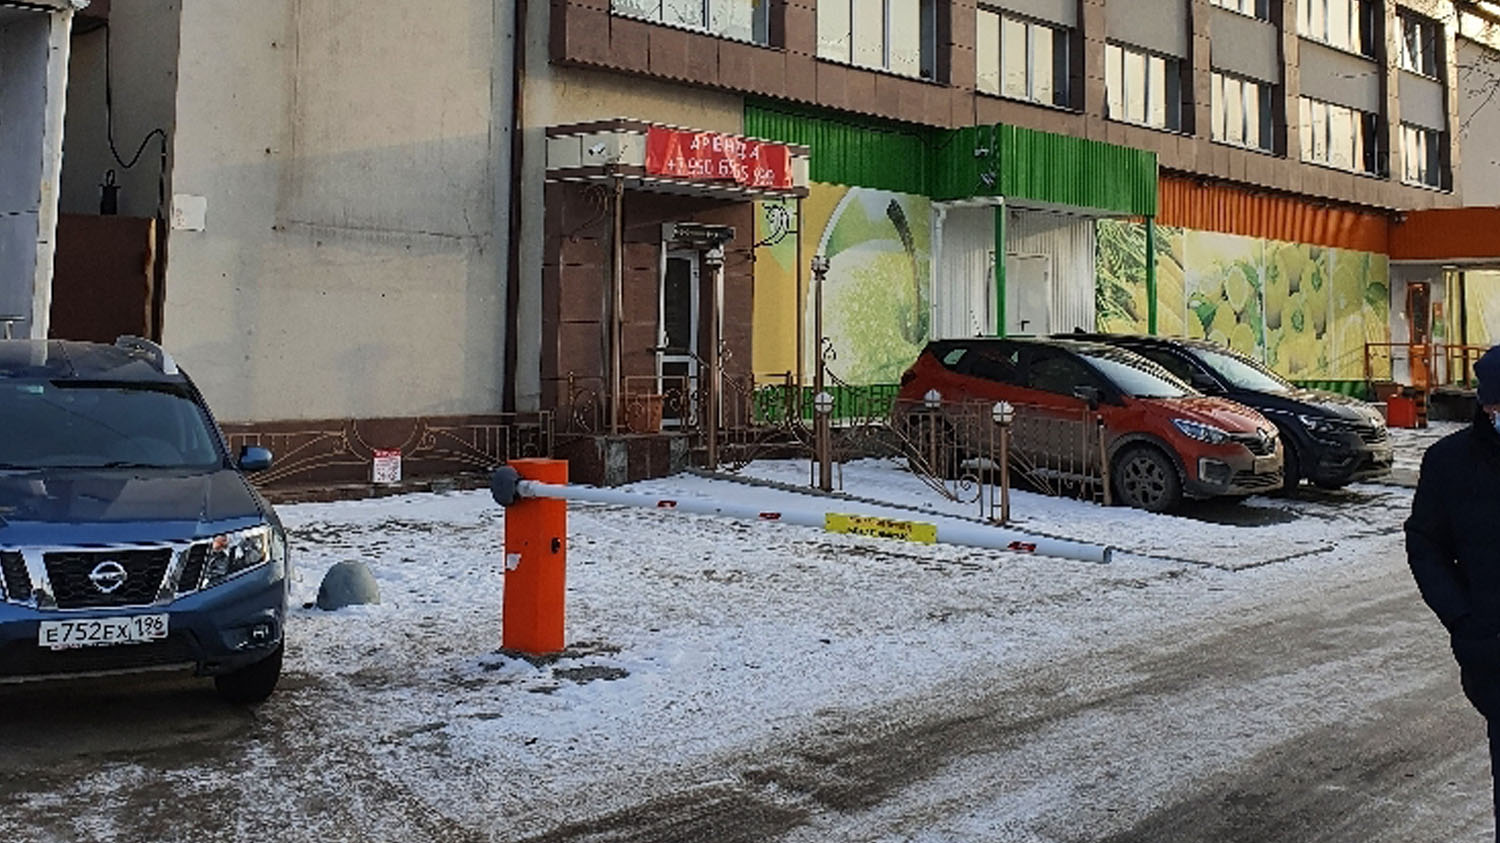 Незаконная установка шлагбаума на территории по ул. Грибоедова